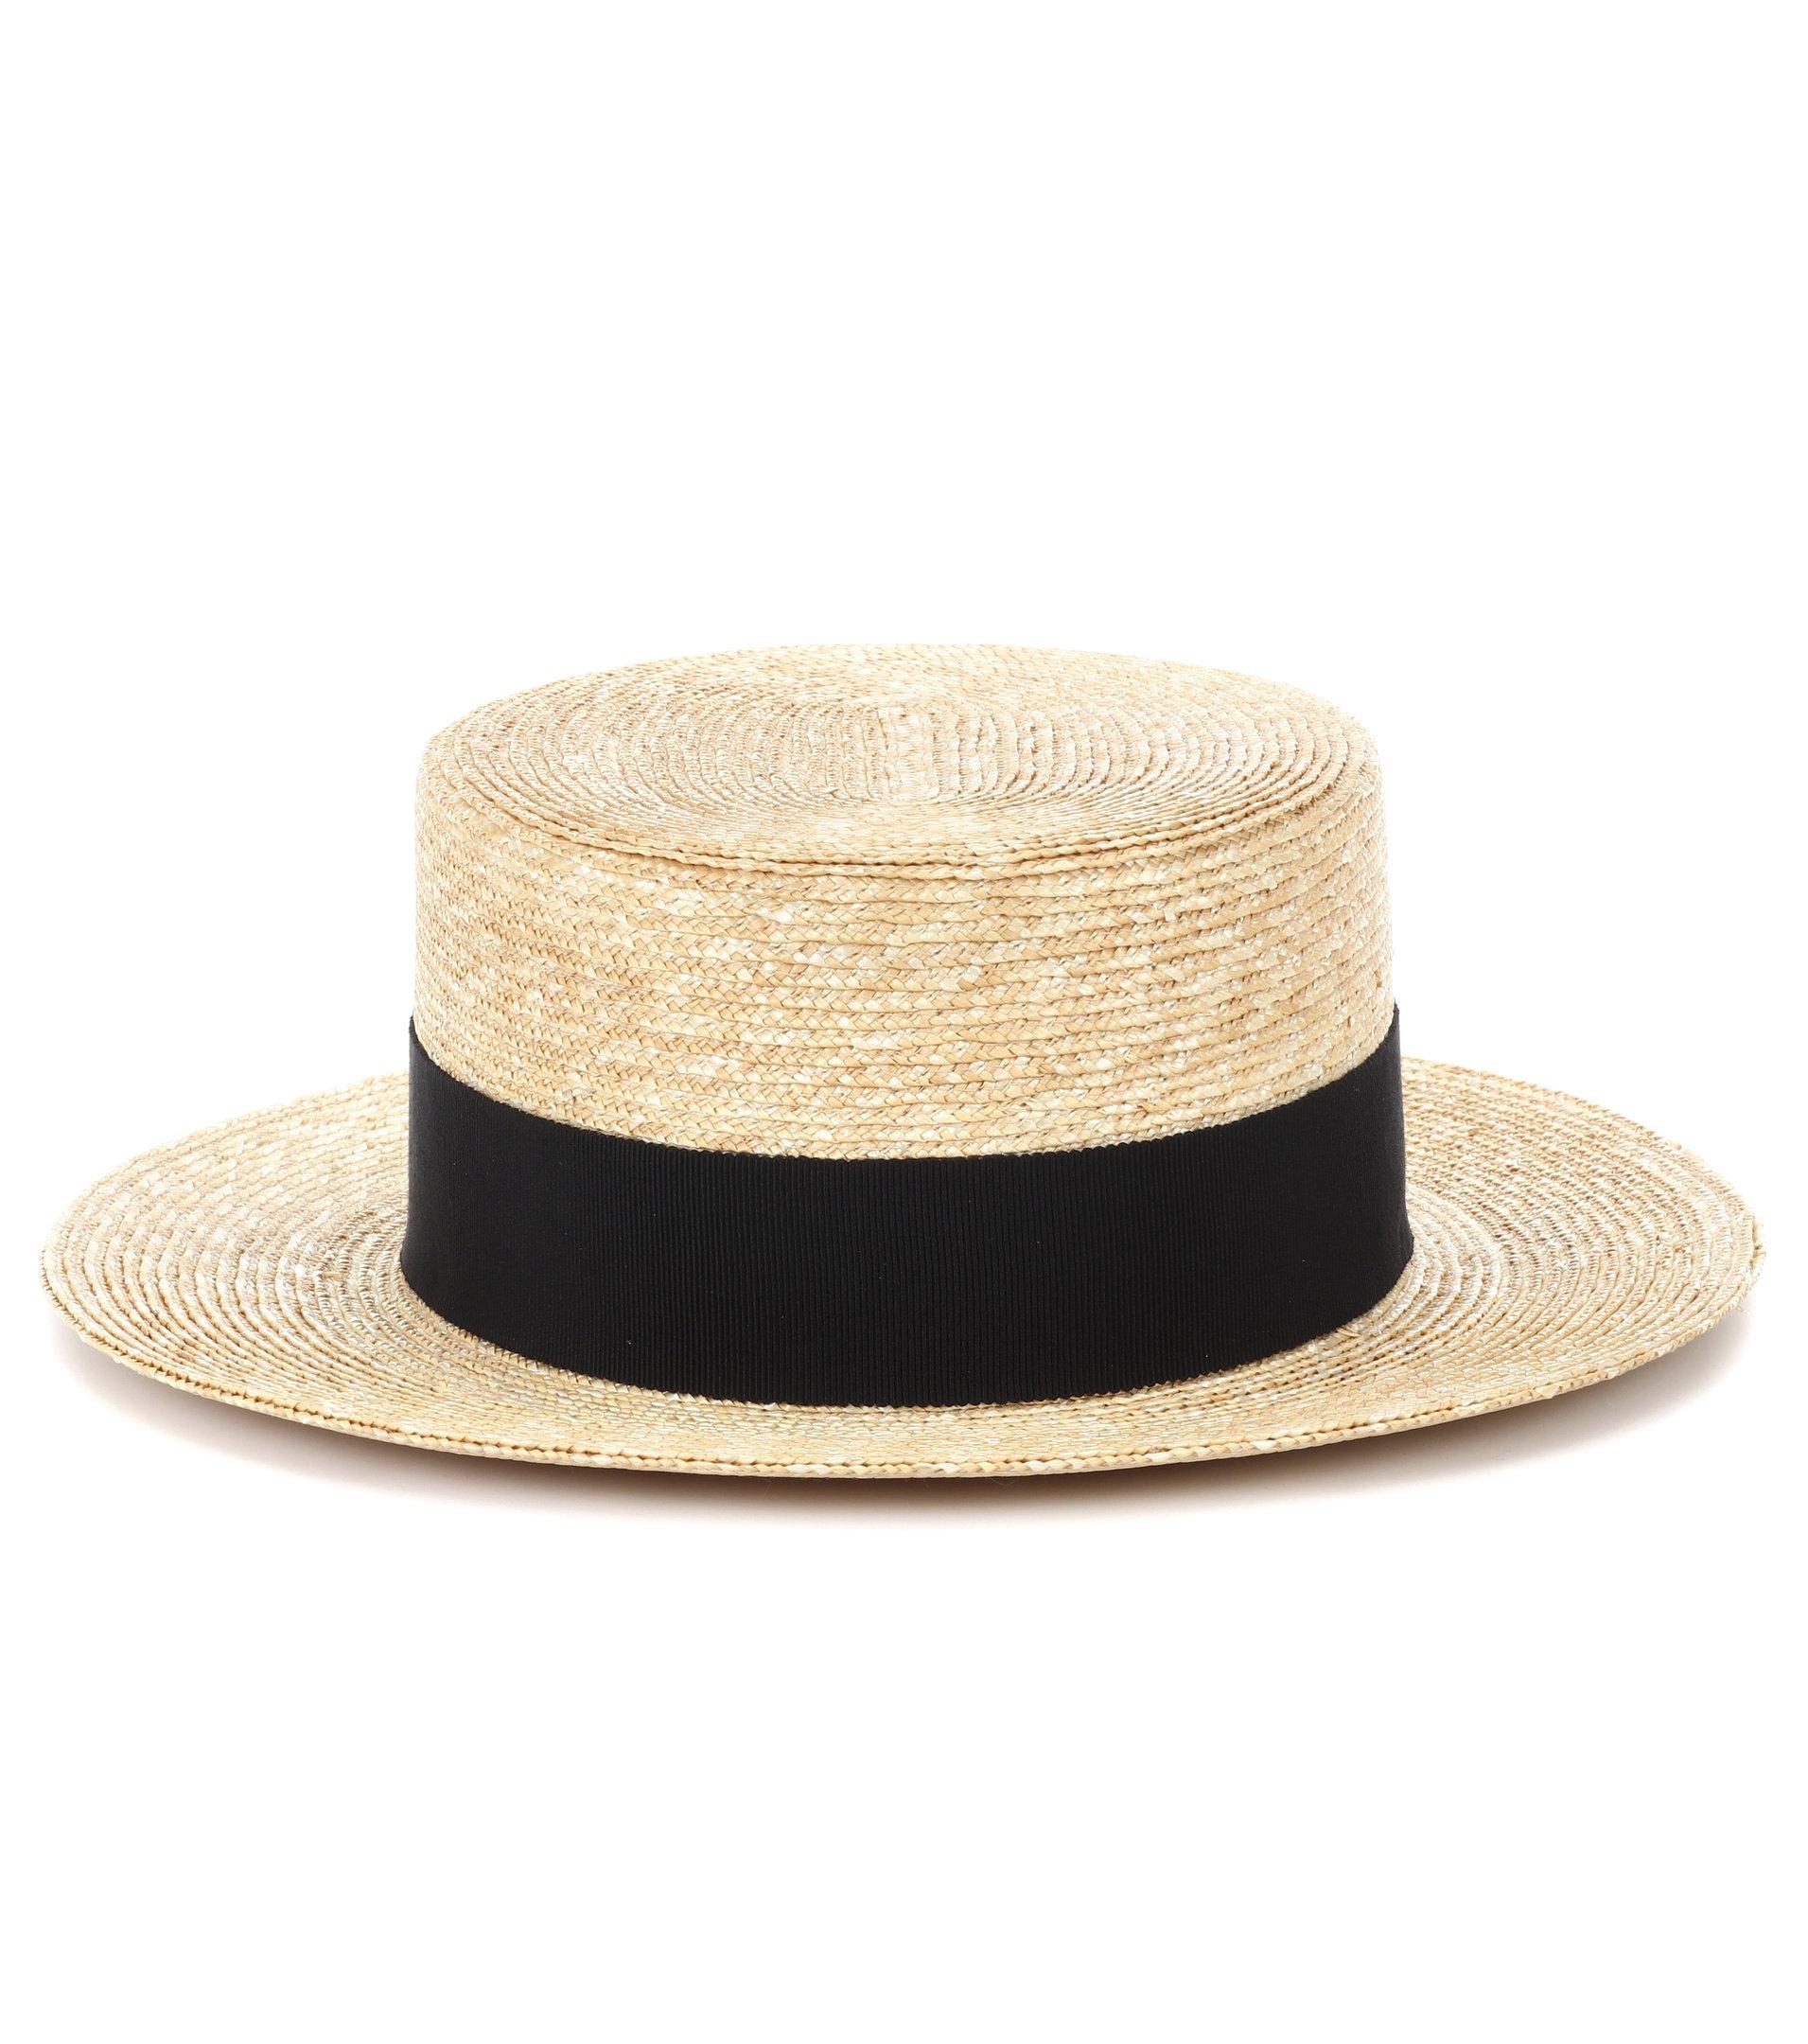 Prada Straw Panama Hat in Natural | Lyst